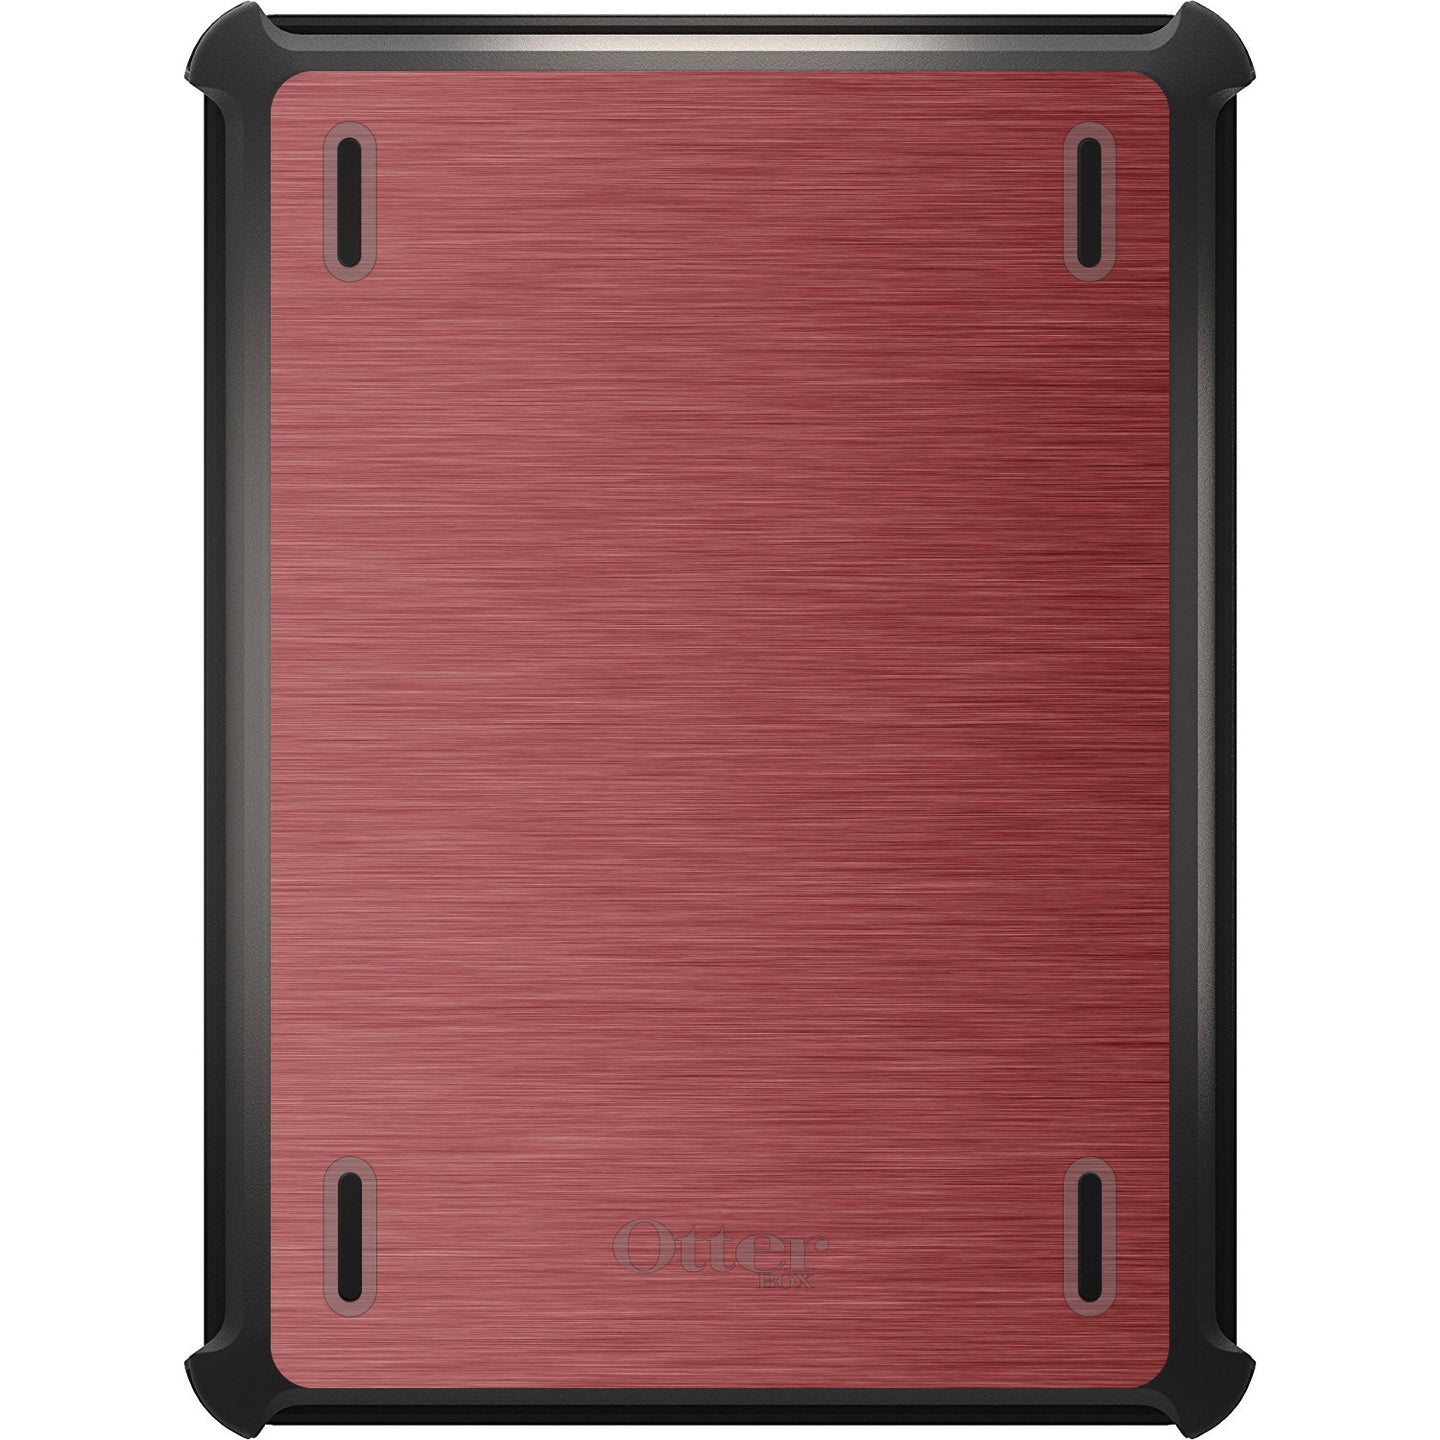 DistinctInk™ OtterBox Defender Series Case for Apple iPad / iPad Pro / iPad Air / iPad Mini - Red Stainless Steel Print